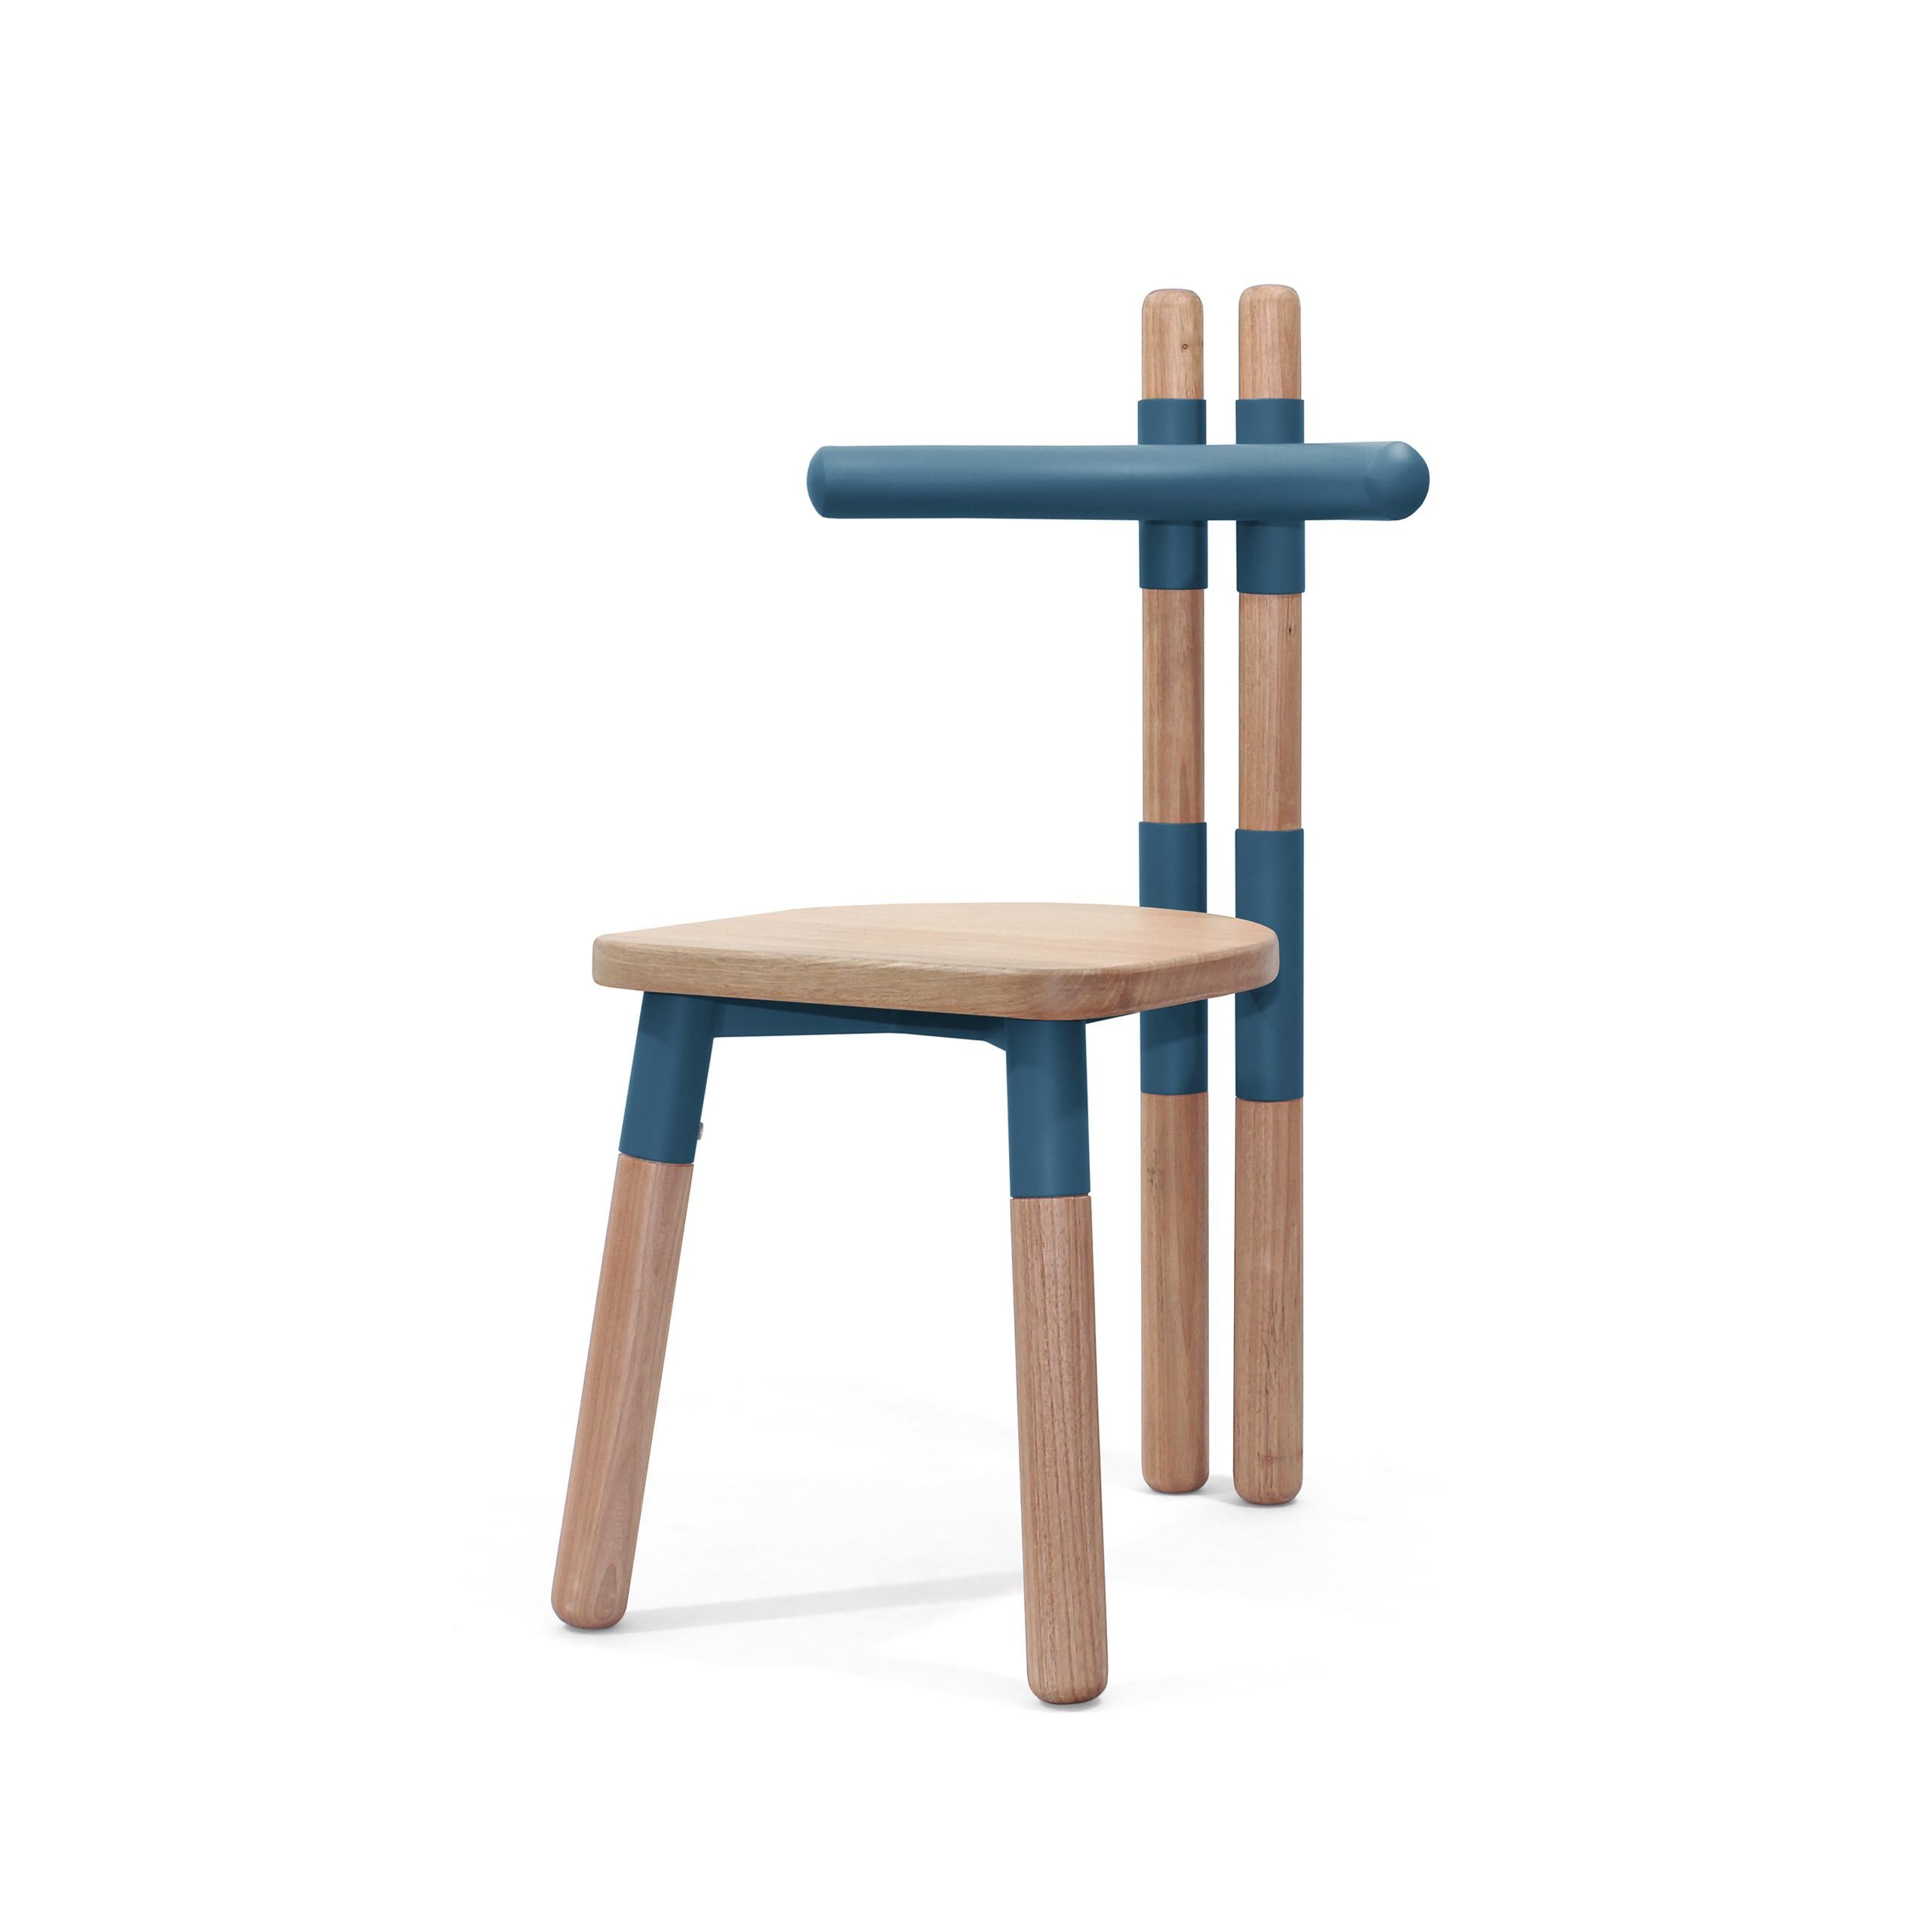 Der Stuhl PK12 ist von den Holzbindern inspiriert, die bei der Konstruktion von Dächern verwendet werden.
Die Stuhlmuffen beziehen sich auf das 